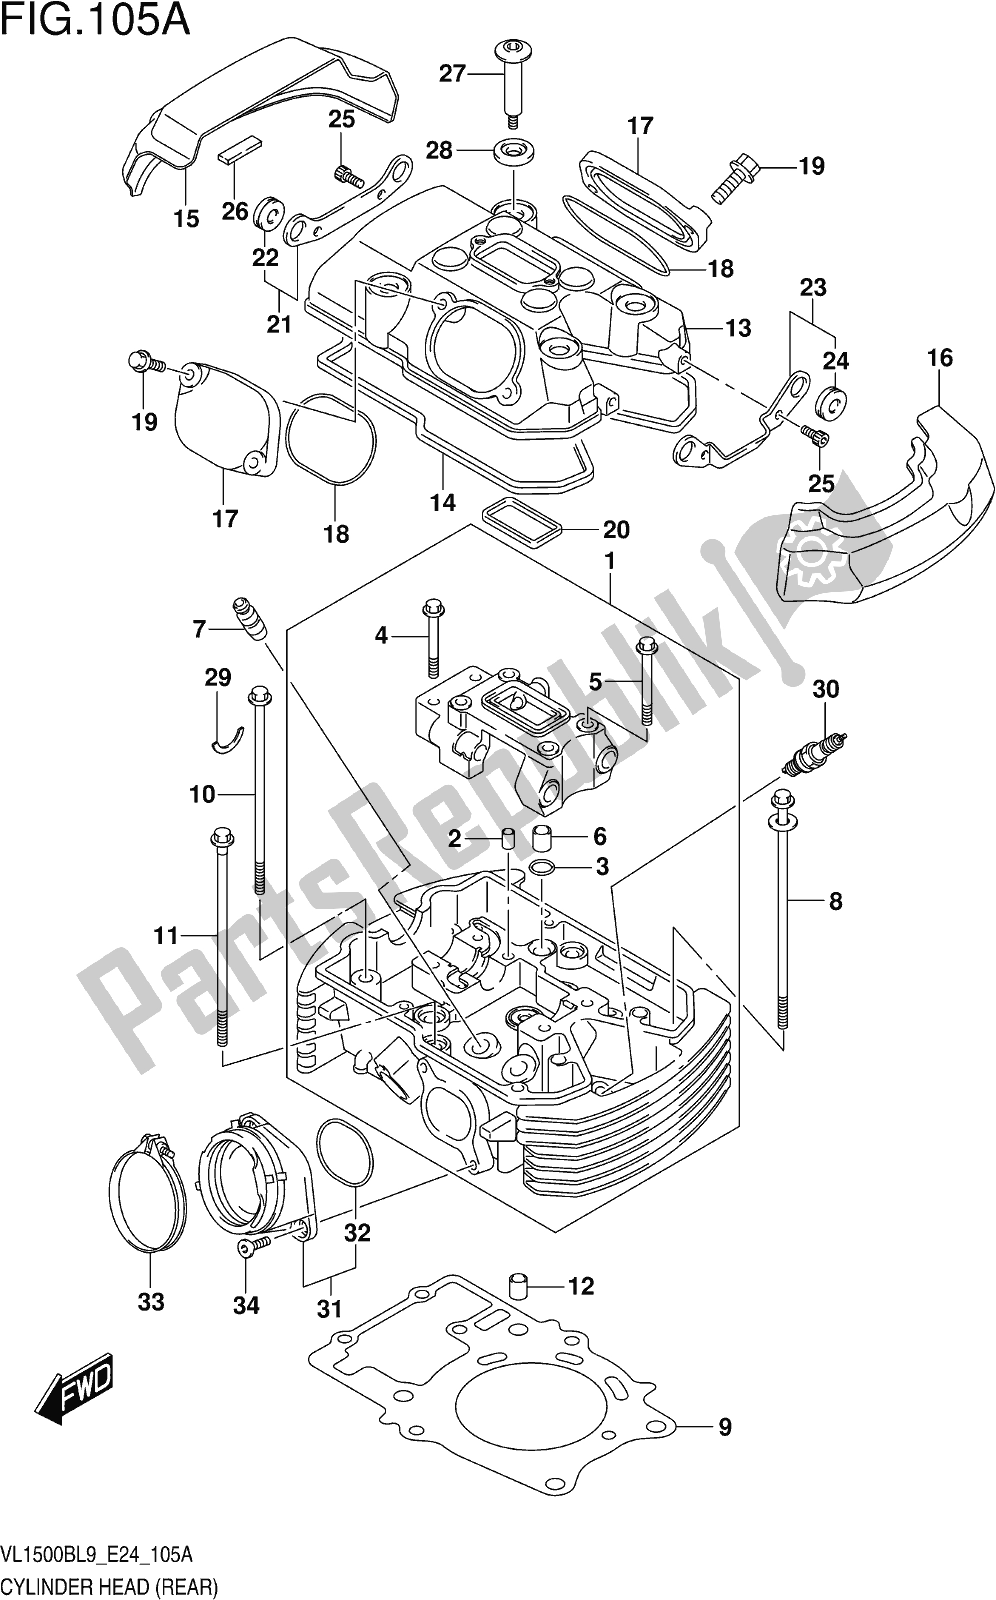 Toutes les pièces pour le Fig. 105a Cylinder Head (rear) du Suzuki VL 1500B 2019